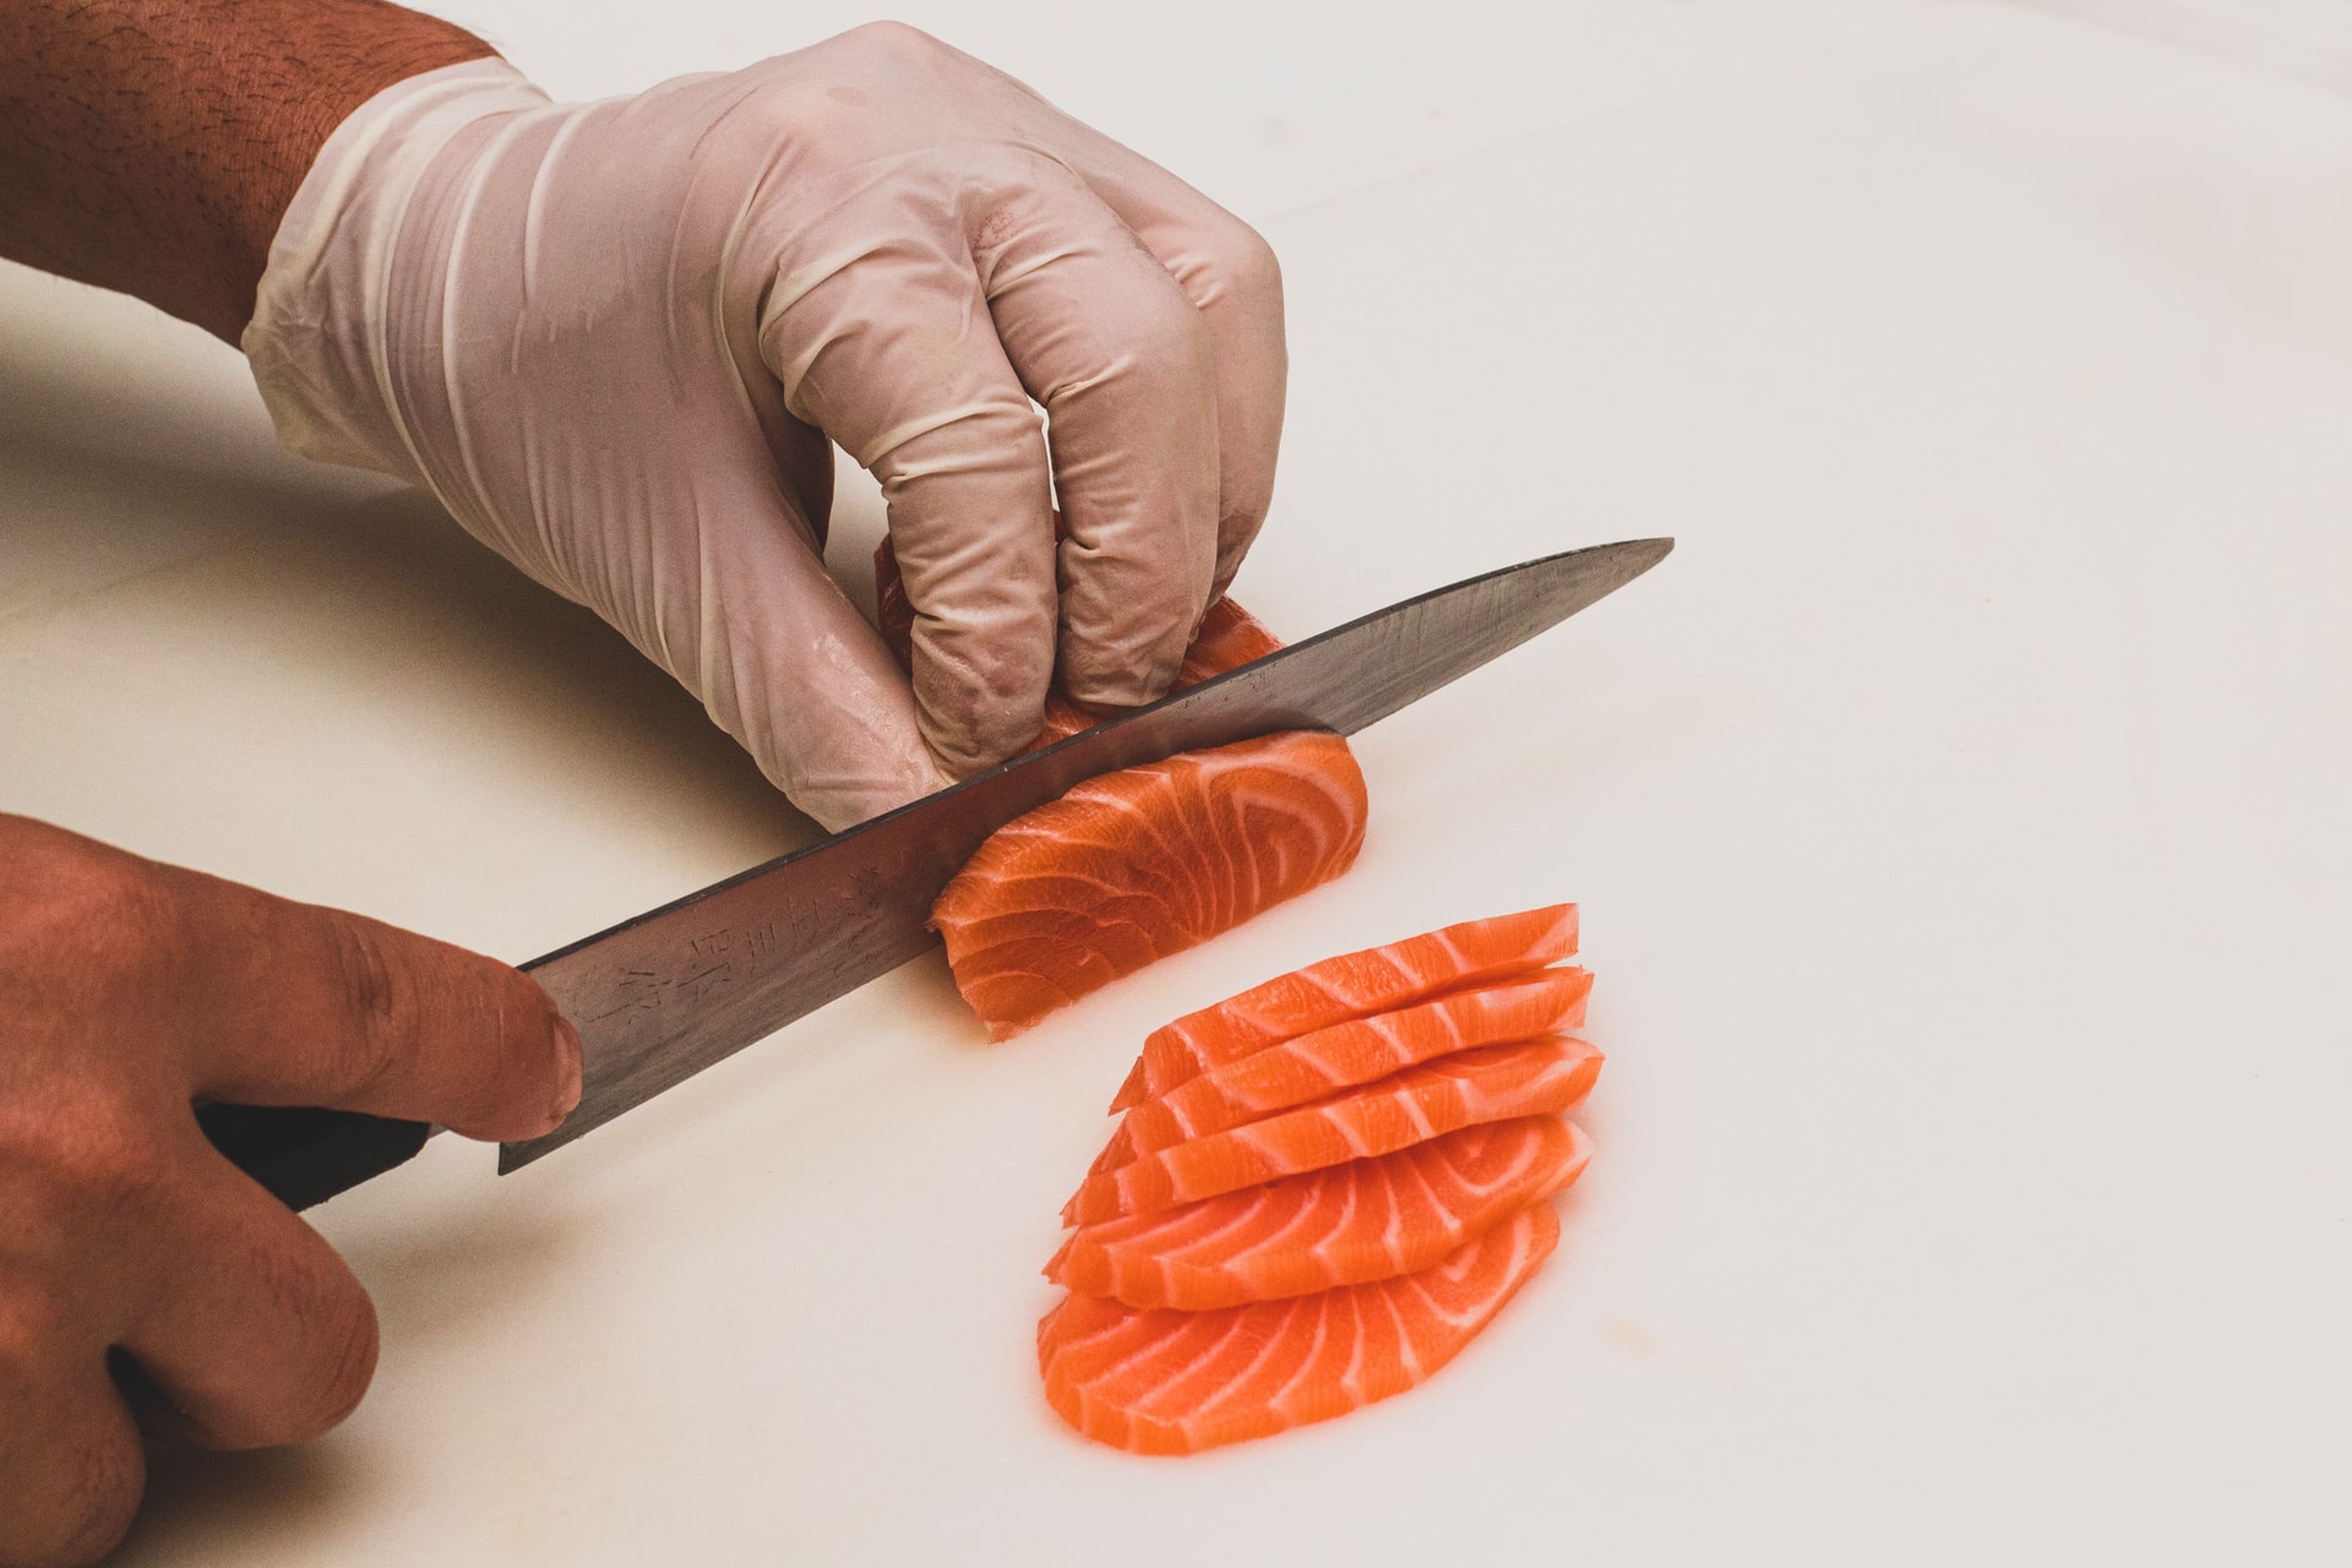 Una pieza de salmón fresco debe tener un color intenso naranja o rosado. Si está pálido, opaco o tiene manchas oscuras o blancas, podría estar en mal estado.